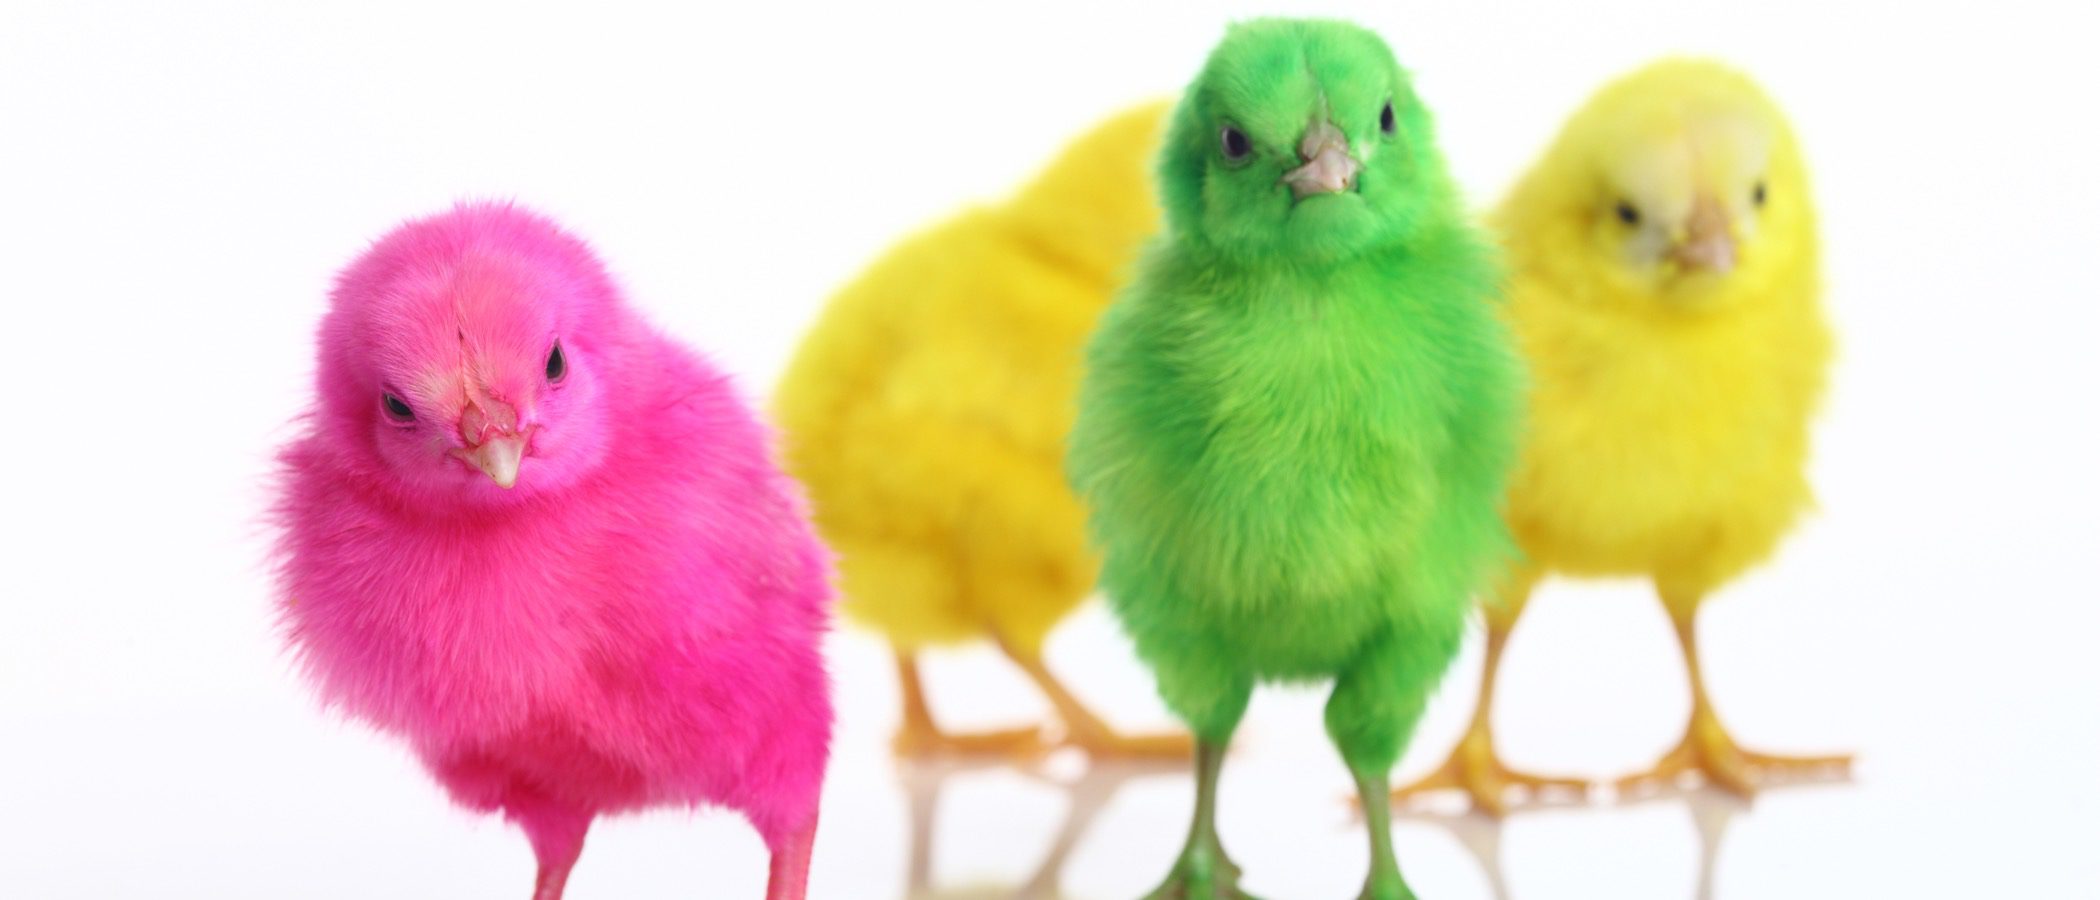 Pollitos de colores: Una práctica cruel